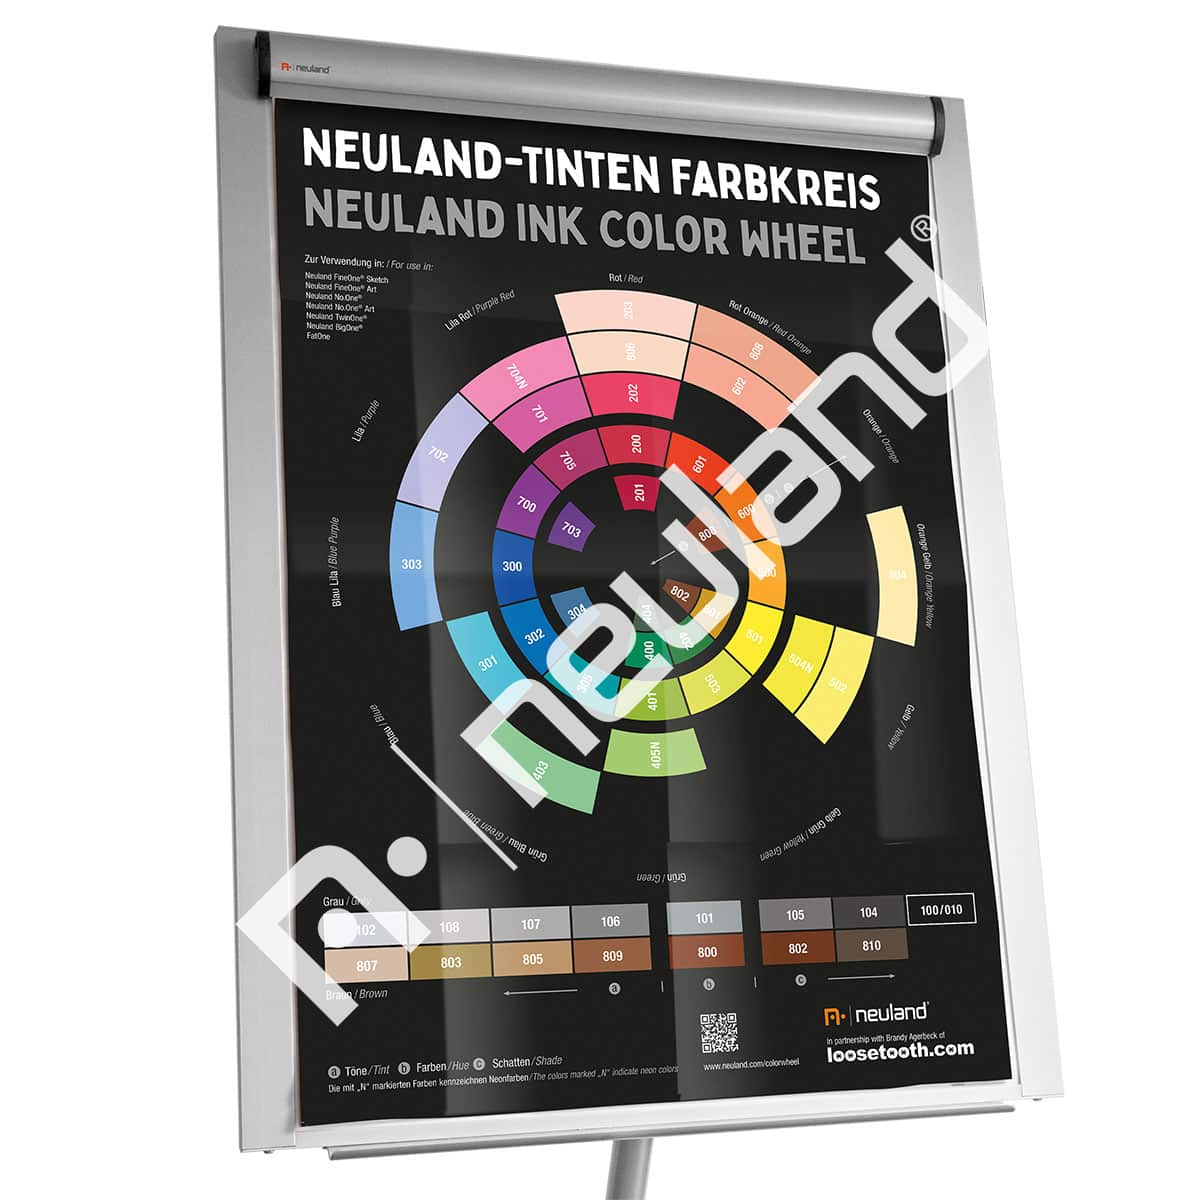 Neuland inkt kleuren poster